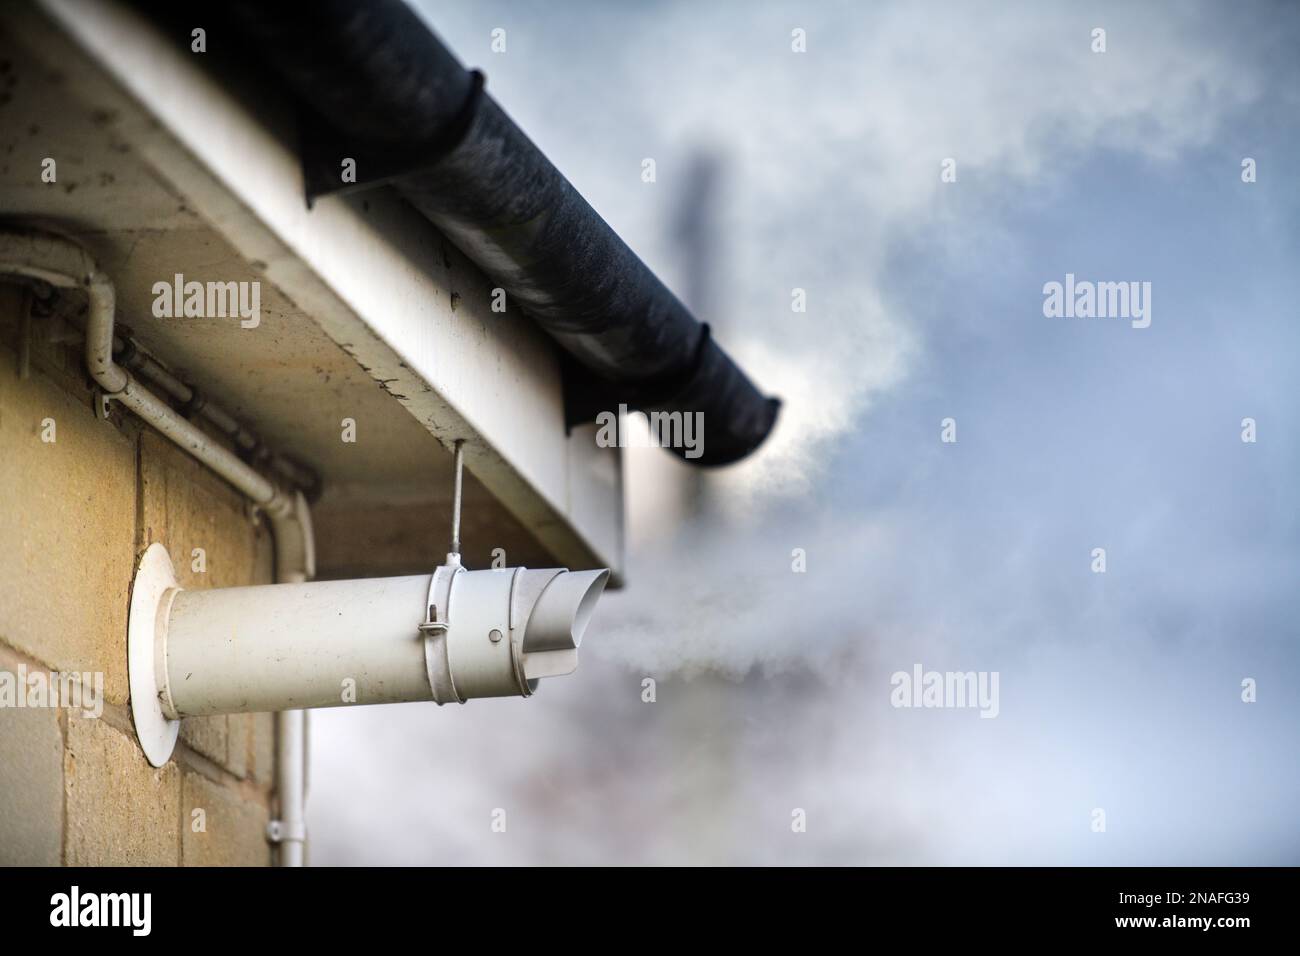 A gas boiler flue vent. Stock Photo